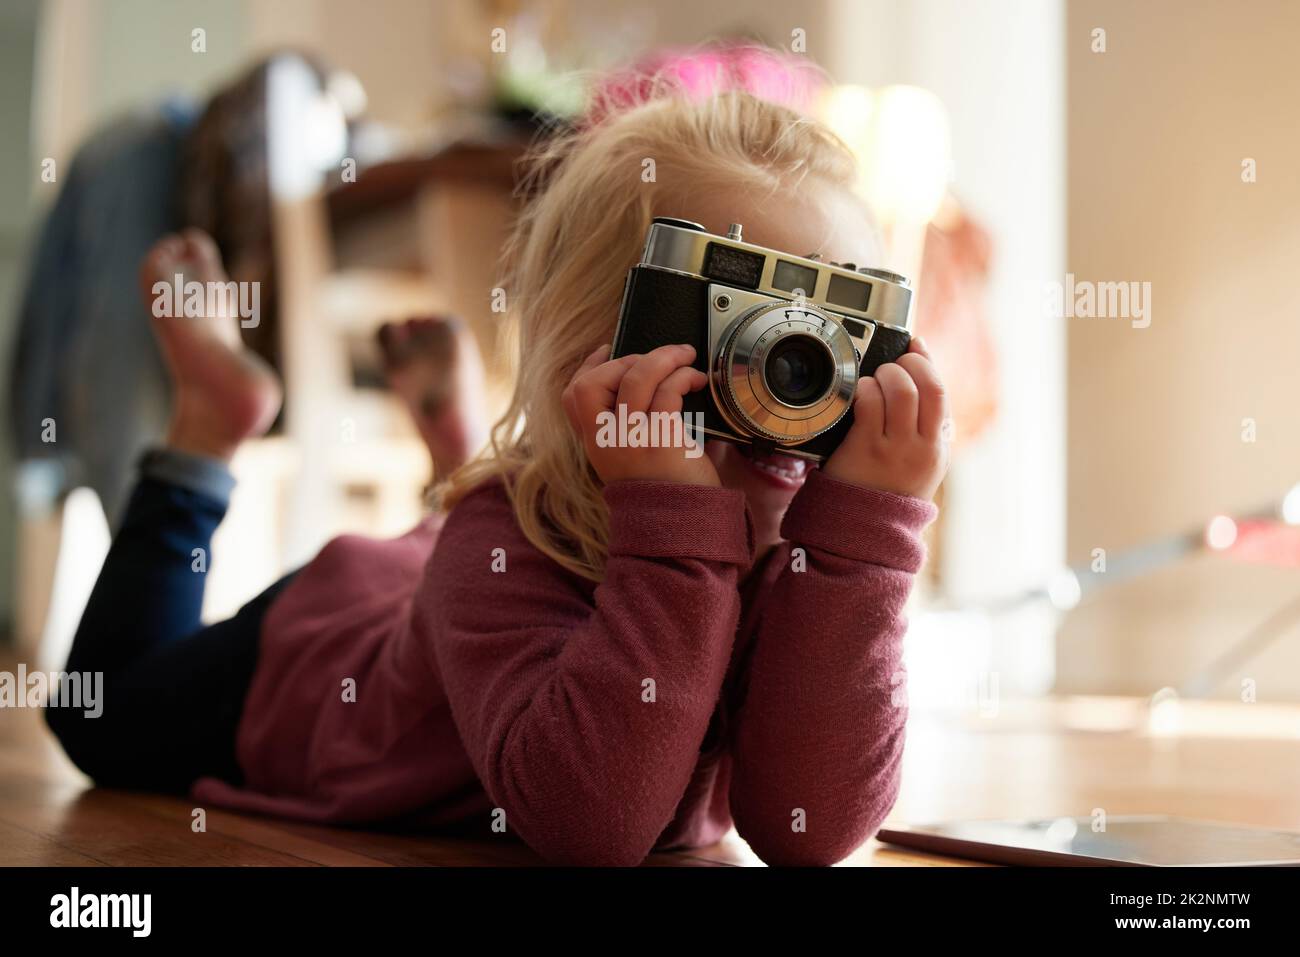 Puis-je avoir le sourire. Photo d'une petite fille prenant une photo avec un appareil photo. Banque D'Images